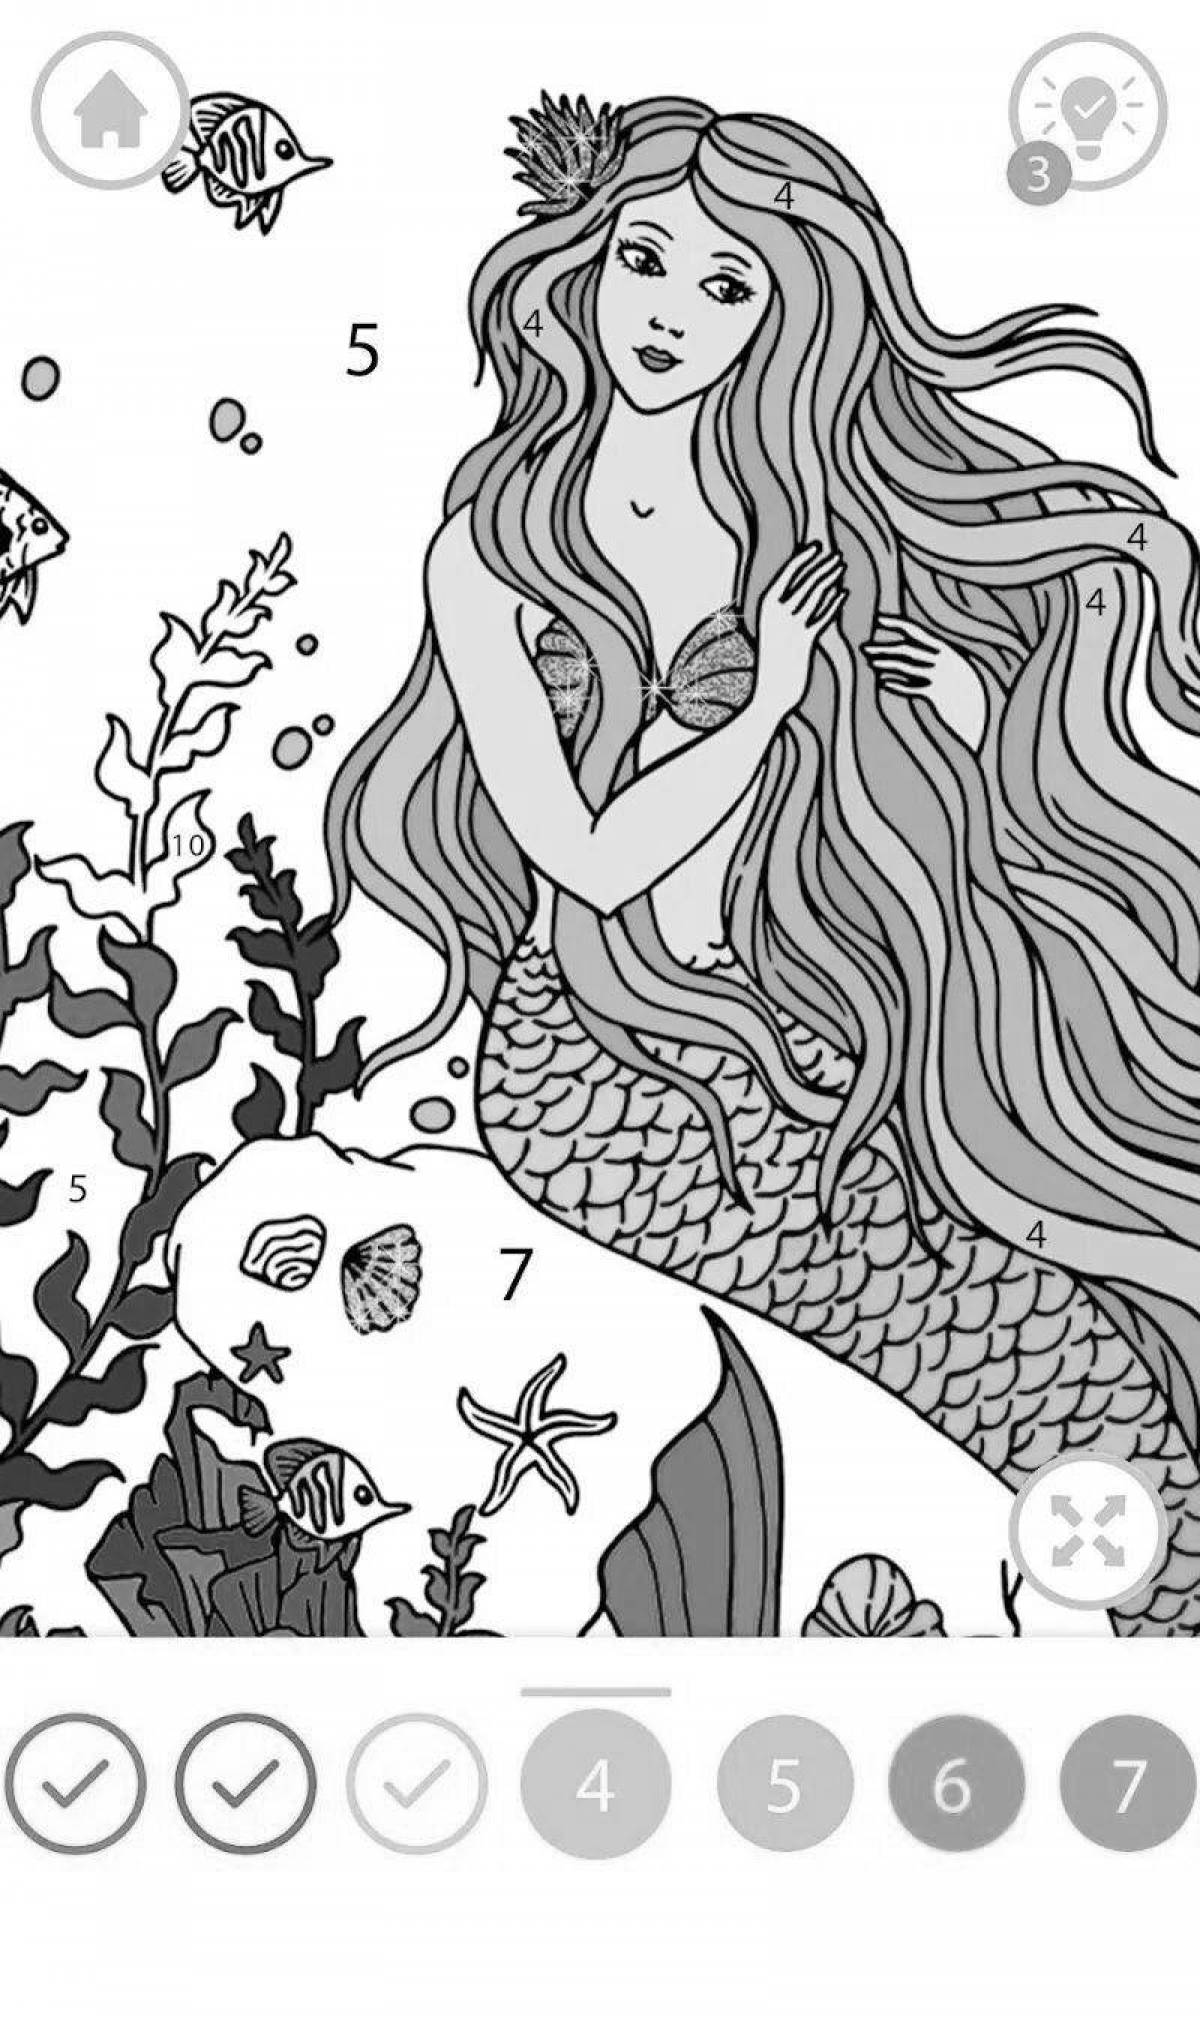 Joyful little mermaid coloring by numbers